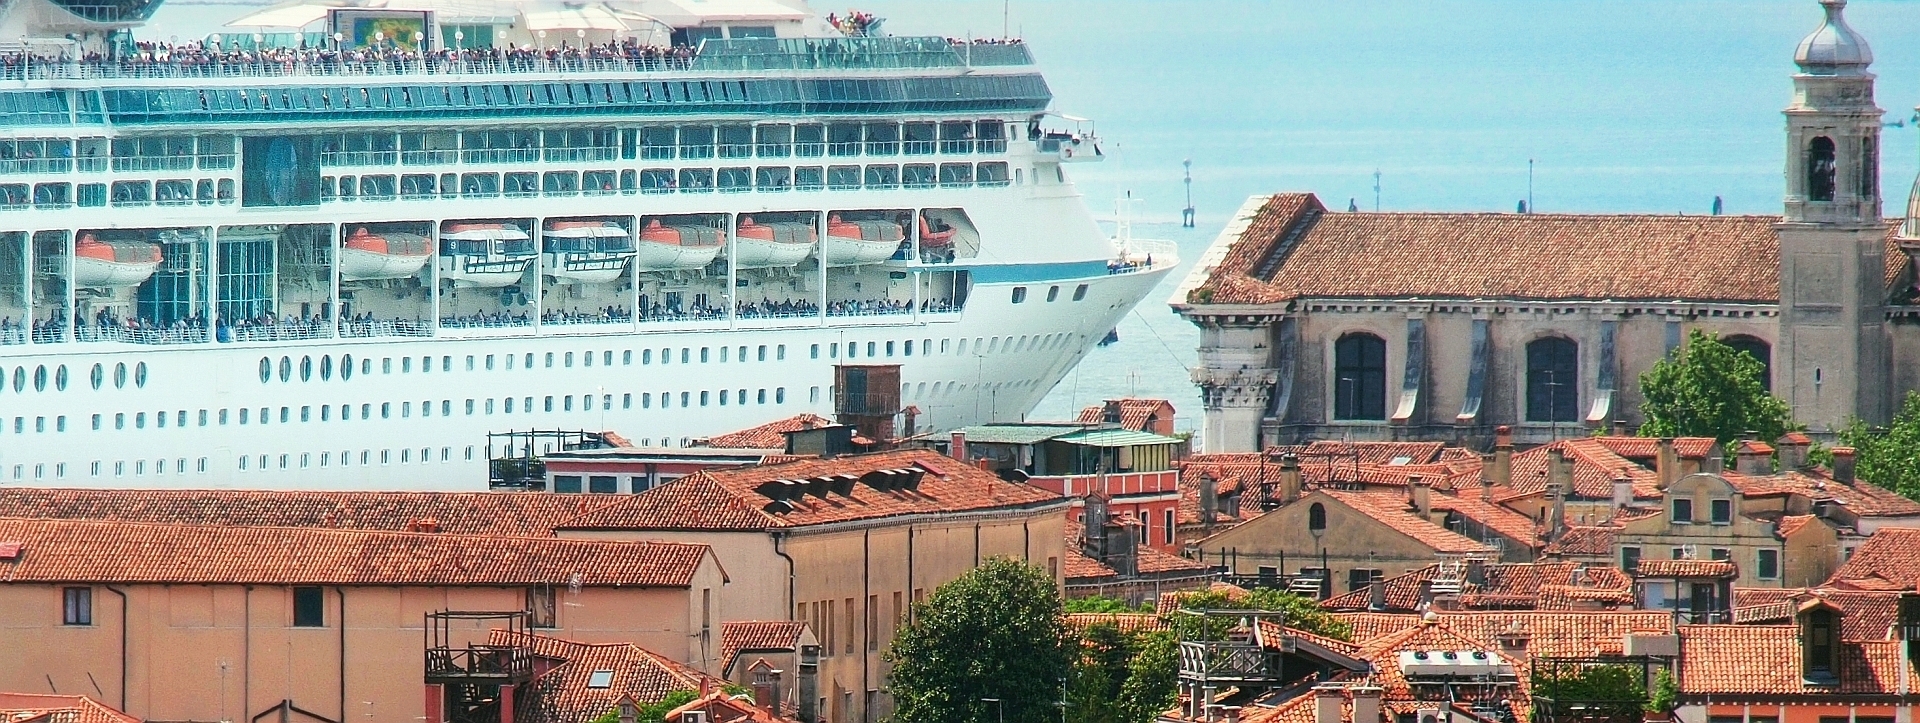 Vor Dorsoduro verläuft der breiteste aller Kanäle Venedigs, den sogar Kreuzfahrtschiffe passieren können. Immer wieder und auch derzeit verboten, sind sie bislang immer wieder zurückgekehrt. Warum nur?